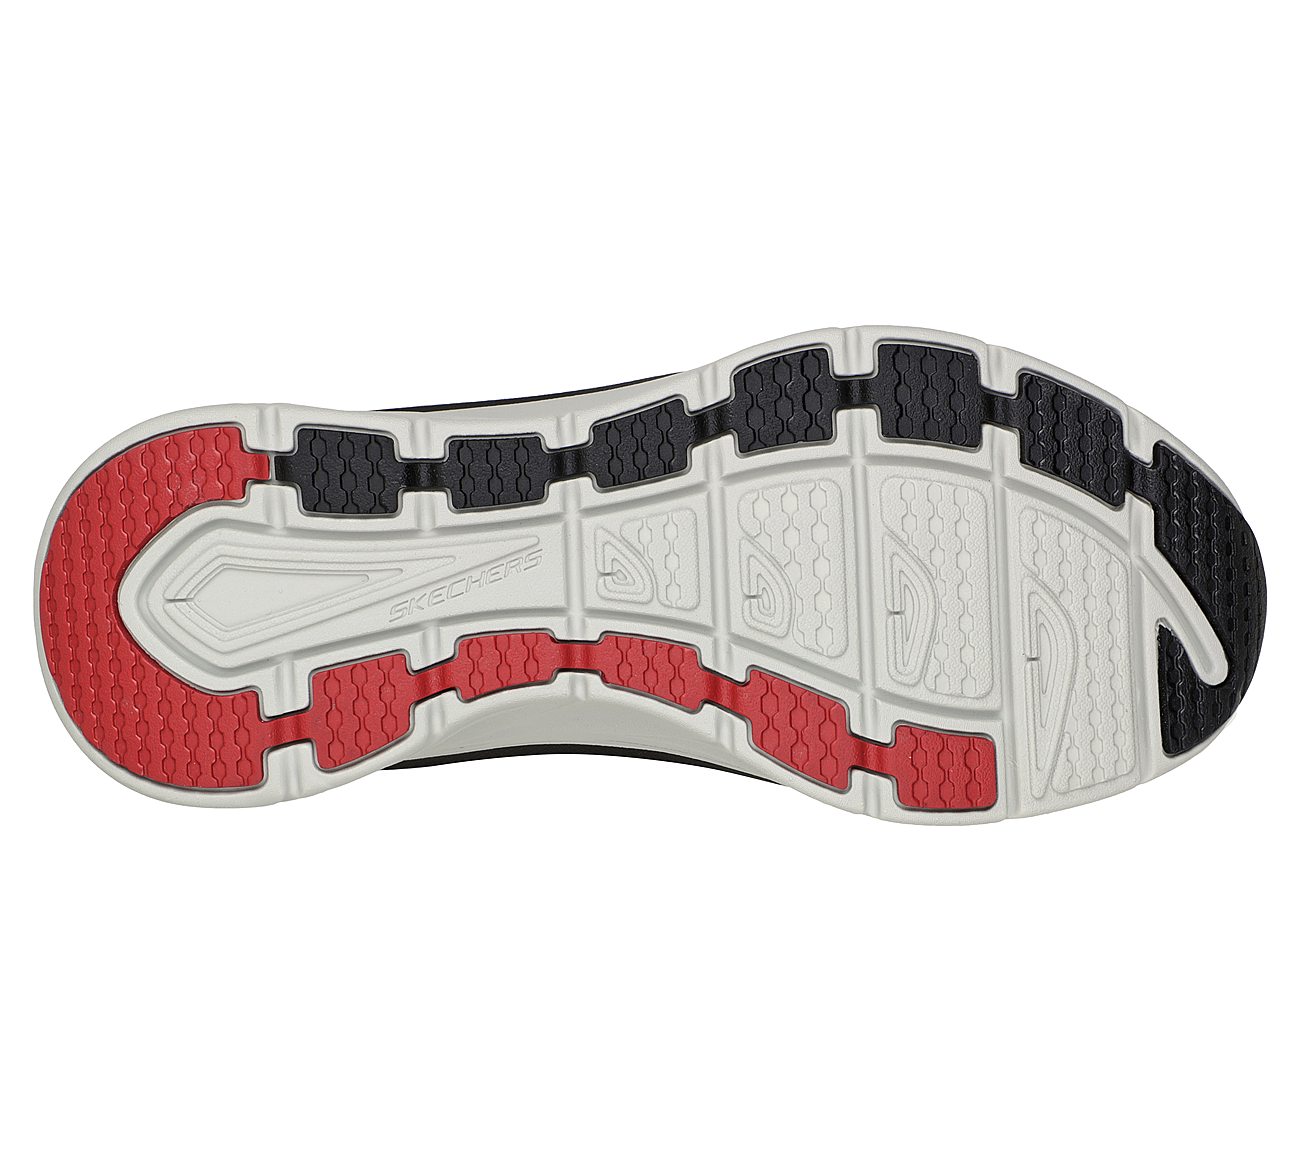 D'LUX WALKER - MEERNO, BLACK/RED Footwear Bottom View